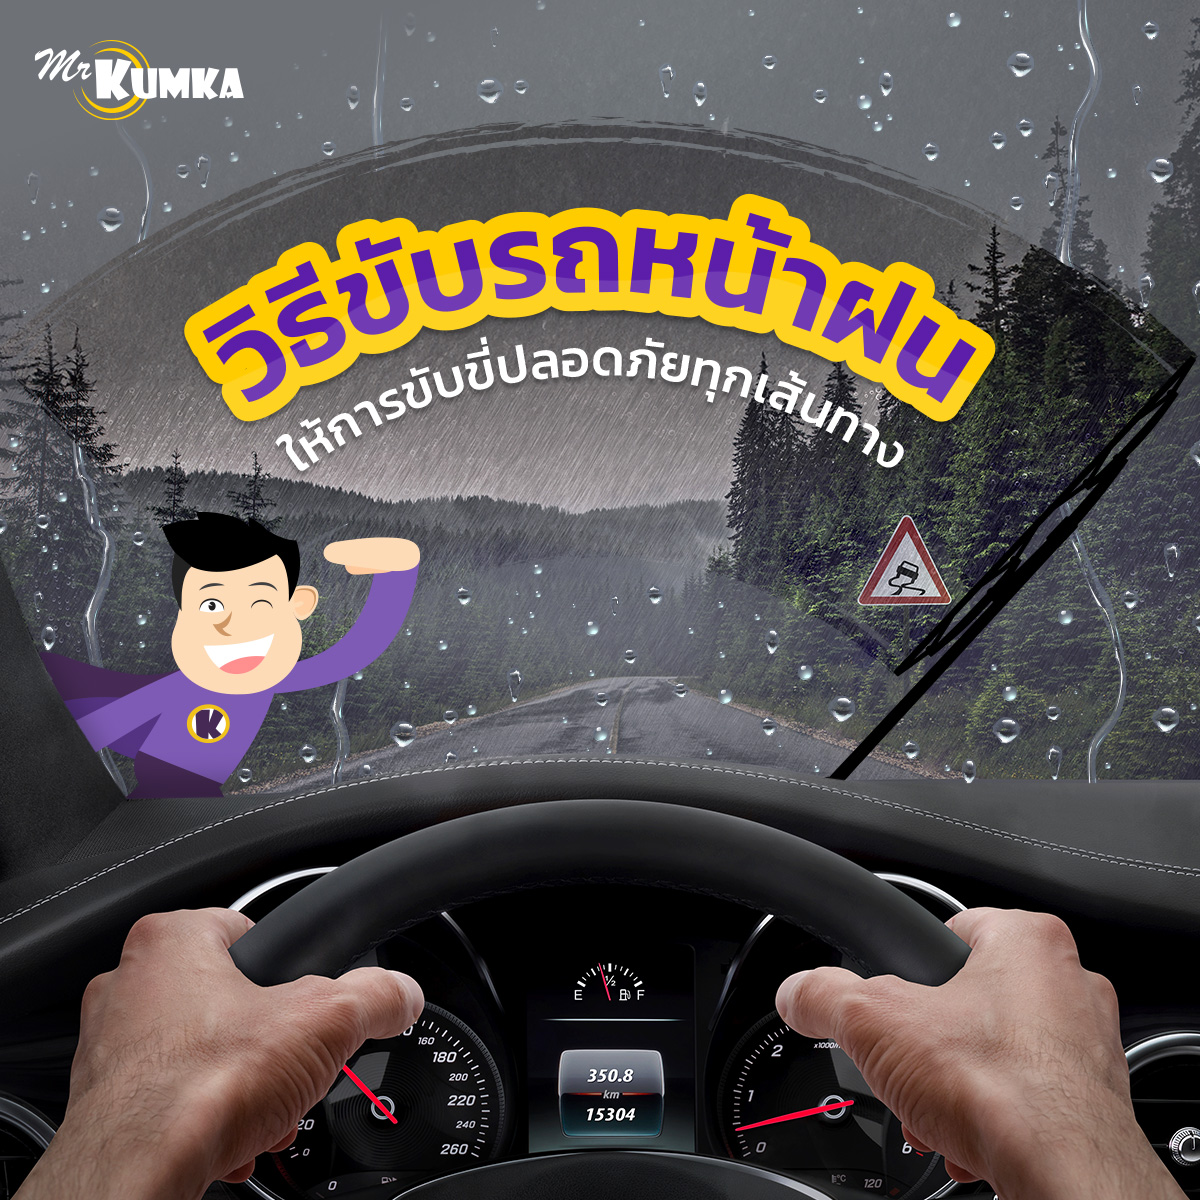 ขับขี่ปลอดภัย ในฤดูฝน กับ MrKumka.com